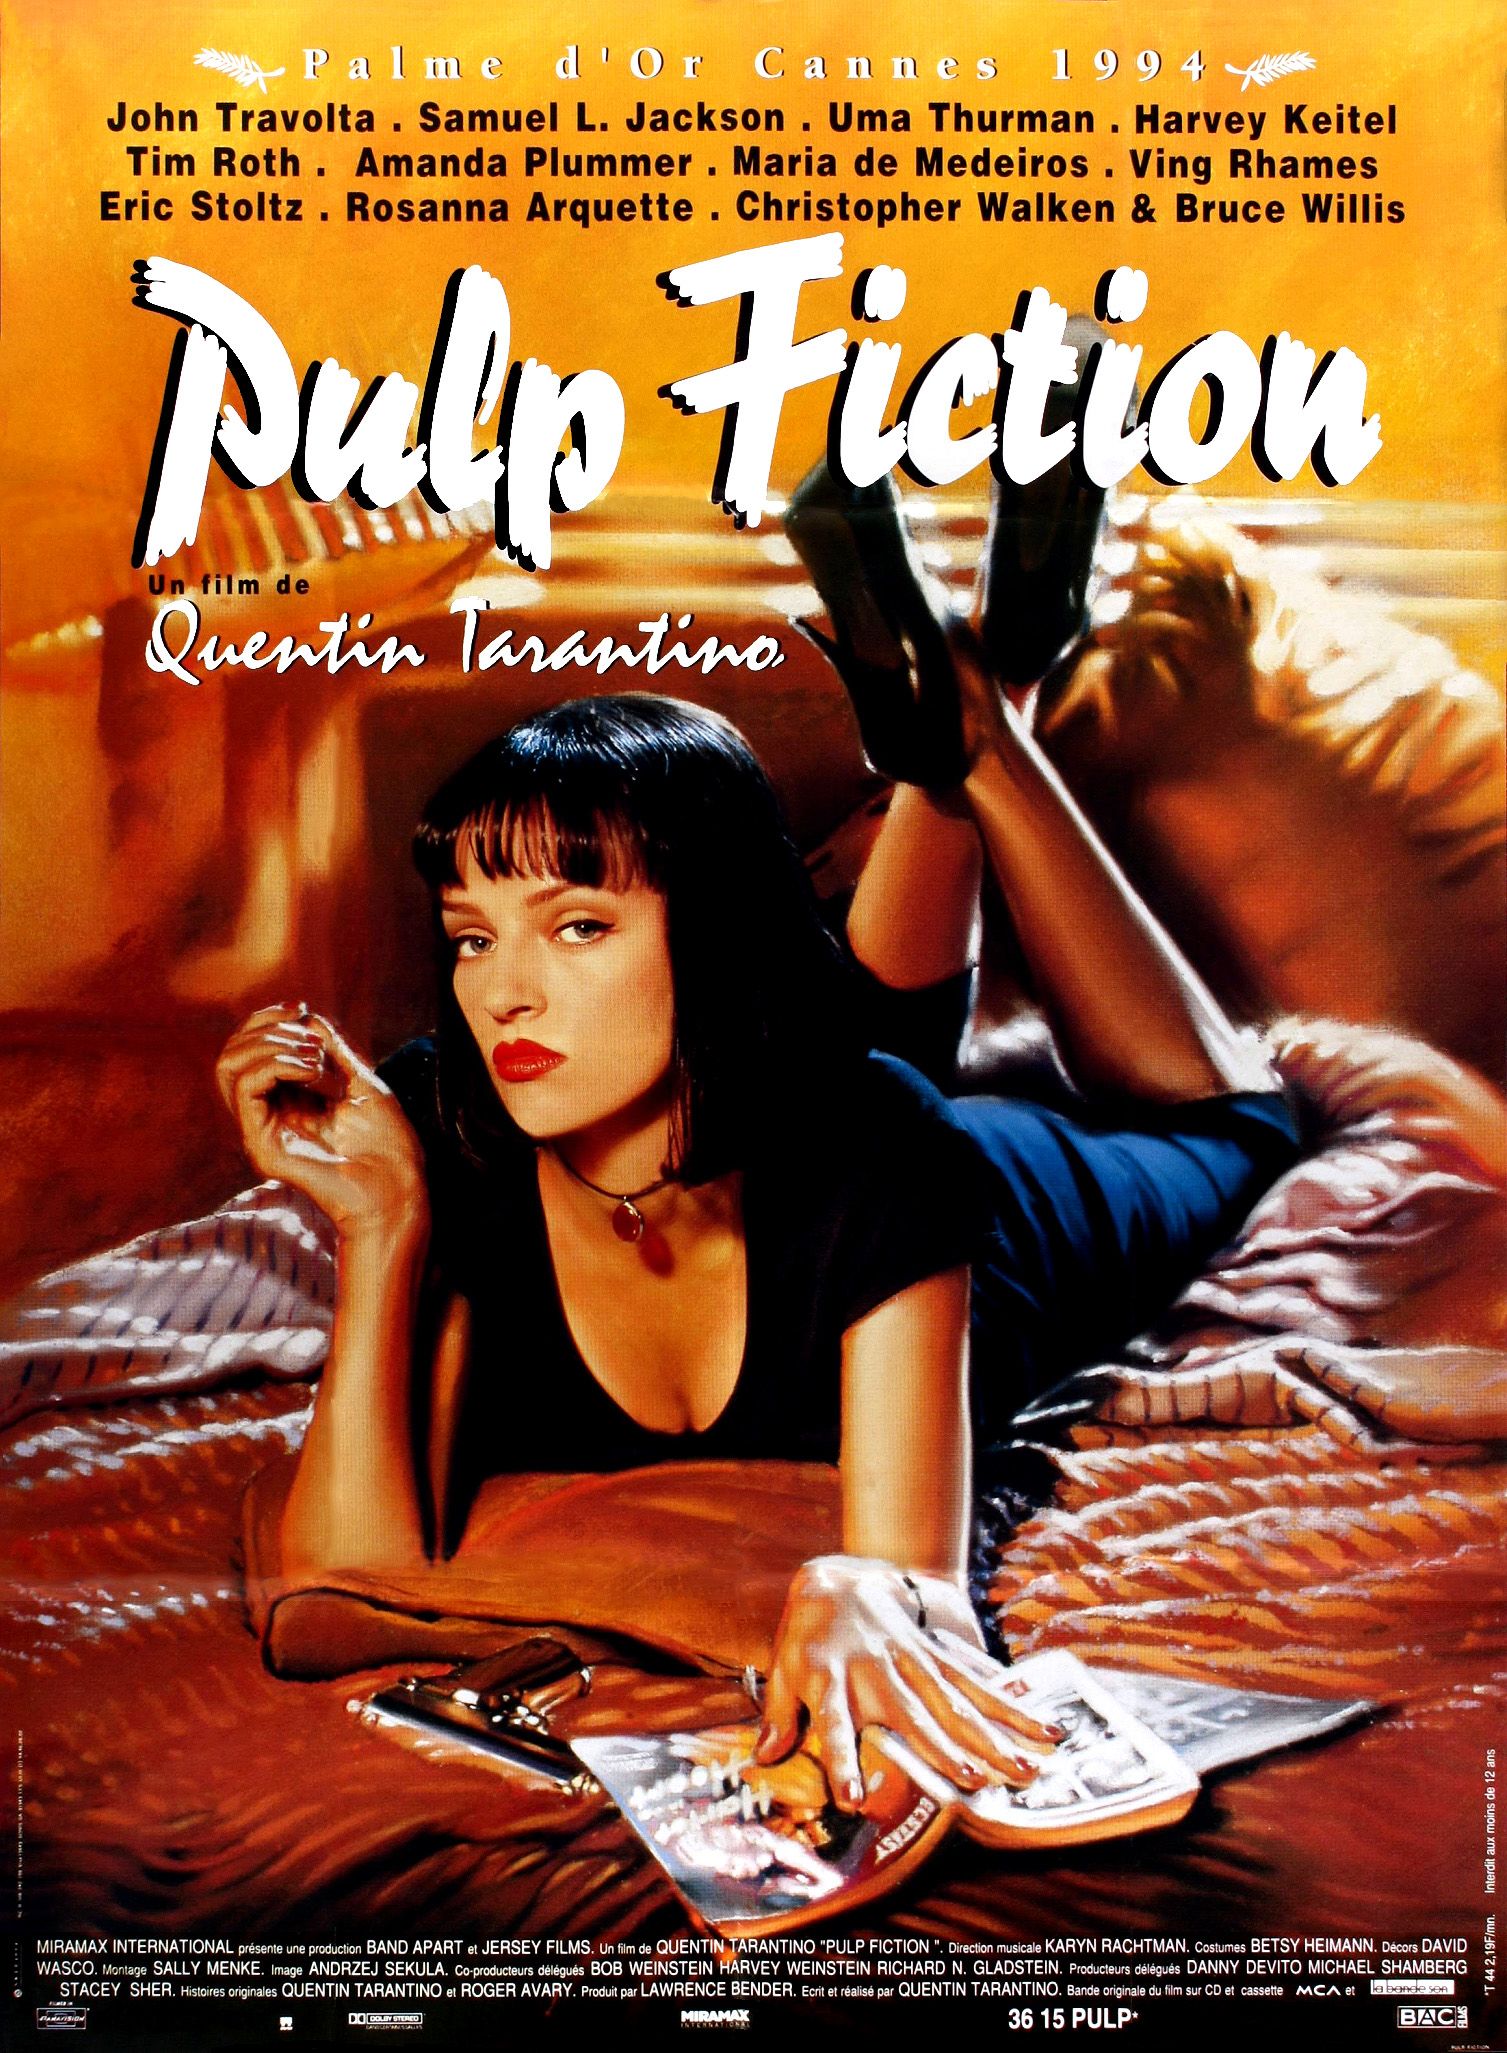  Affiches  posters et images de Pulp  Fiction  1994 